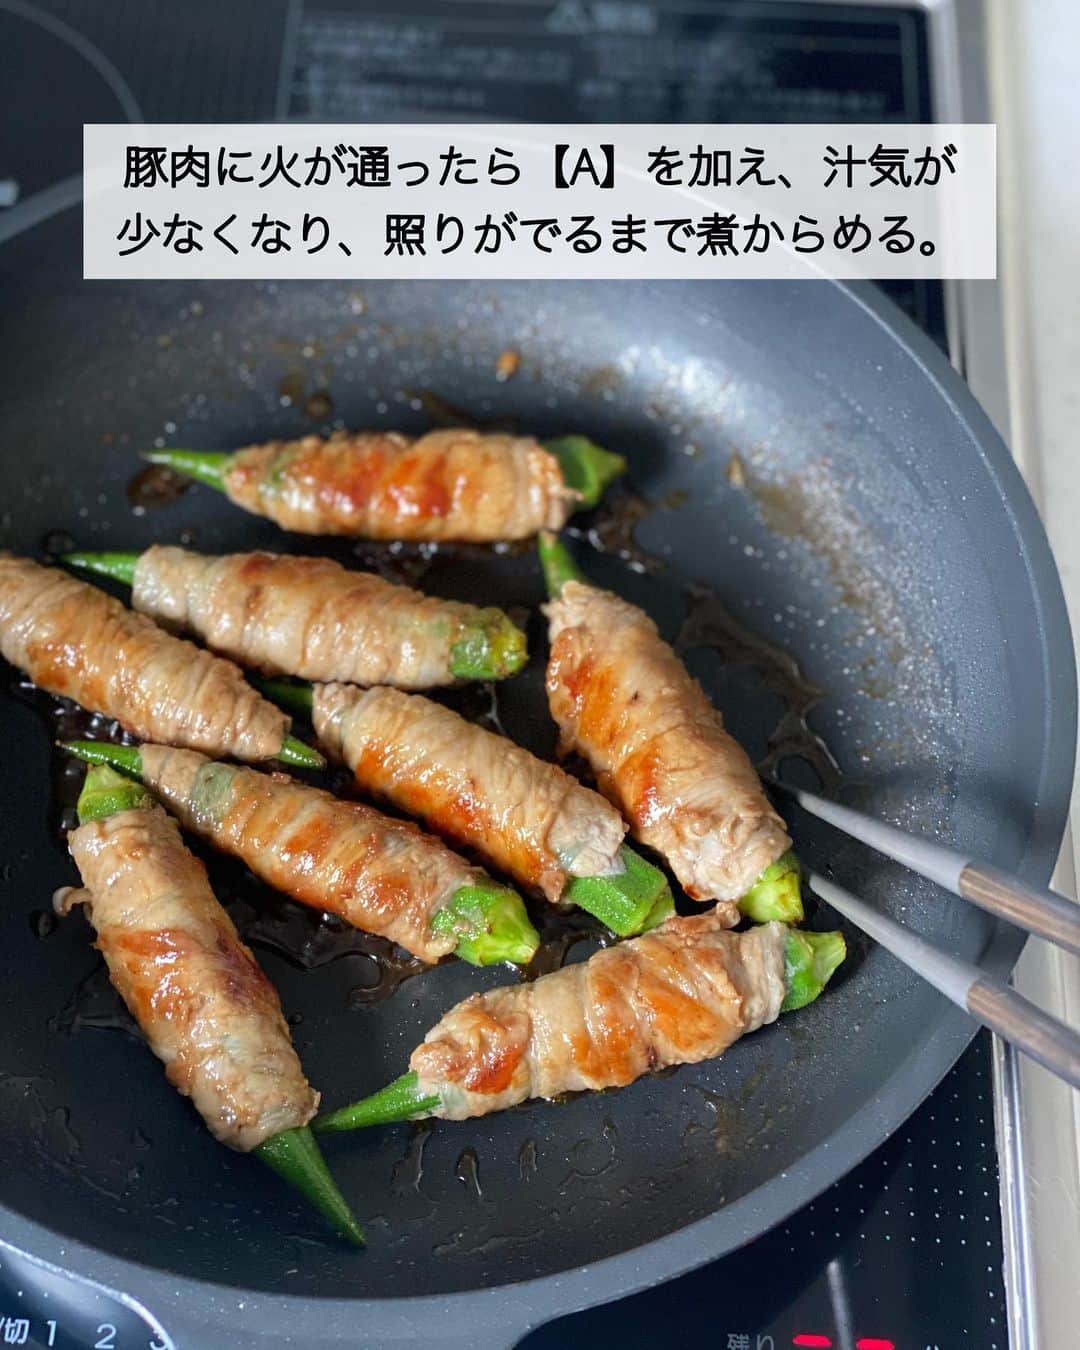 ちおりさんのインスタグラム写真 - (ちおりInstagram)「【野菜まるごと栄養満点✨】 ⁡ 他のレシピを見る→ @chiori.m.m をチェック✅ ⁡ ⁡ ━︎━︎━︎━︎━︎━︎━︎━︎━︎━︎━︎ まるごとオクラの肉巻き まる生ぽん酢照り焼き ━︎━︎━︎━︎━︎━︎━︎━︎━︎━︎━︎ ⁡ ⁡ ⁡ こんにちは(^ ^) ⁡ 今日は、食べ応えある！ まるごとオクラの肉巻き。 ぽん酢入りのたれで煮からめ、照りをつけます。 オクラの食感も良く タレが絡んだお肉はジューシー😆 ⁡ 大人も子どもも喜ぶおかずになりますよ🌱 ⁡ 『ヤマサ まる生ぽん酢』は旨みたっぷりでまろやか  醤油、果汁、出汁、醸造酢の4つの生にこだわり 爽やかな果汁感とやわらかな味わい。 素材の美味しさをまるごといかしたぽん酢です✨ ⁡ 酸味がやわらかくお子様にも食べやすいと思います。 ⁡ お弁当おかずにもおすすめ🍱 ぜひ『ヤマサ まる生ぽん酢』で 作ってみてくださいね😊 ⁡ ⁡ ________________________________________ ⁡ ⁡ ✍︎ ✍︎recipe ✍︎ ✍︎ ⁡ ⁡ 👩‍🌾【材料】2人分 •オクラ……………………8本 •豚バラ薄切り肉………150g Aまる生ぽん酢…………大さじ2 Aみりん……………………大さじ1 Aにんにくチューブ……1㎝ ⁡ ⁡ ________________________________________ ⁡ ⁡ ⁡ 👩‍🍳【作り方】 ❶オクラはネットに入れたまま、軽くもみながら水洗いし、水気をふいてガクをとる。豚肉を1枚ずつひろげ、オクラを1本ずつのせて巻き、軽くにぎる。 ⁡ ⁡ ❷フライパンに油をひかずに中火で熱し、巻き終わりを下にして入れ、転がしながら中火で焼く。豚肉に火が通ったら【A】を加え、汁気が少なくなり、照りがでるまで煮からめる。 ⁡ ⁡ ________________________________________ ⁡ ⁡ 📝【POINT】 •豚バラ薄切り肉はしゃぶしゃぶ用を使っても OKです。 ⁡ ⁡ ⁡ ︎≡︎≡︎≡︎≡︎≡︎≡︎≡︎≡︎≡︎≡︎≡︎≡︎≡︎≡︎≡︎≡︎≡︎≡︎≡︎≡︎≡︎≡︎≡︎≡︎≡︎≡︎≡︎≡︎≡︎≡︎≡︎ 【✅新刊レシピ本のお知らせ】 📕ちおり流くり返し作りたいおかず 🙇🏻‍♀️おかげ様で書籍累計10万部を突破しました。 ⁡ ⁡ 全国の書店、Amazon、楽天ブックス 宝島チャンネルにて発売中です。 ⁡ ➤ ➤ ➤ @chiori.m.m のストーリーハイライト。 プロフィールのリンクからご覧いただけます😊 📗ちおりの簡単絶品おかず１、２ 既刊もぜひご覧いただきたいです。 ⁡ ≡︎≡︎≡︎≡︎≡︎≡︎≡︎≡︎≡︎≡︎≡︎≡︎≡︎≡︎≡︎≡︎≡︎≡︎≡︎≡︎≡︎≡︎≡︎≡︎≡︎≡︎≡︎≡︎≡︎≡︎≡︎≡︎≡︎≡︎ ⁡ ⁡ ⁡ 最後までご覧いただきありがとうございます☺️ ⁑ ⁑ ⁑ ⁑ ⁑ ⁑ ⁑ ⁑  #ヤマサ #まる生ぽん酢 #まる生wおろしぽん酢   #Nadiaレシピ #Nadiaartist   #食卓 #献立 #簡単ごはん #レシピ  #簡単レシピ #節約レシピ #時短レシピ  #日々の暮らし #作り置きレシピ  #夕飯レシピ #お弁当レシピ  #料理初心者  #おつまみレシピ  #作り置き #料理レシピ #野菜レシピ  #肉巻き #肉巻きレシピ #豚バラレシピ  #豚バラ #豚バラ肉 #オクラ #オクラレシピ」6月5日 12時41分 - chiori.m.m